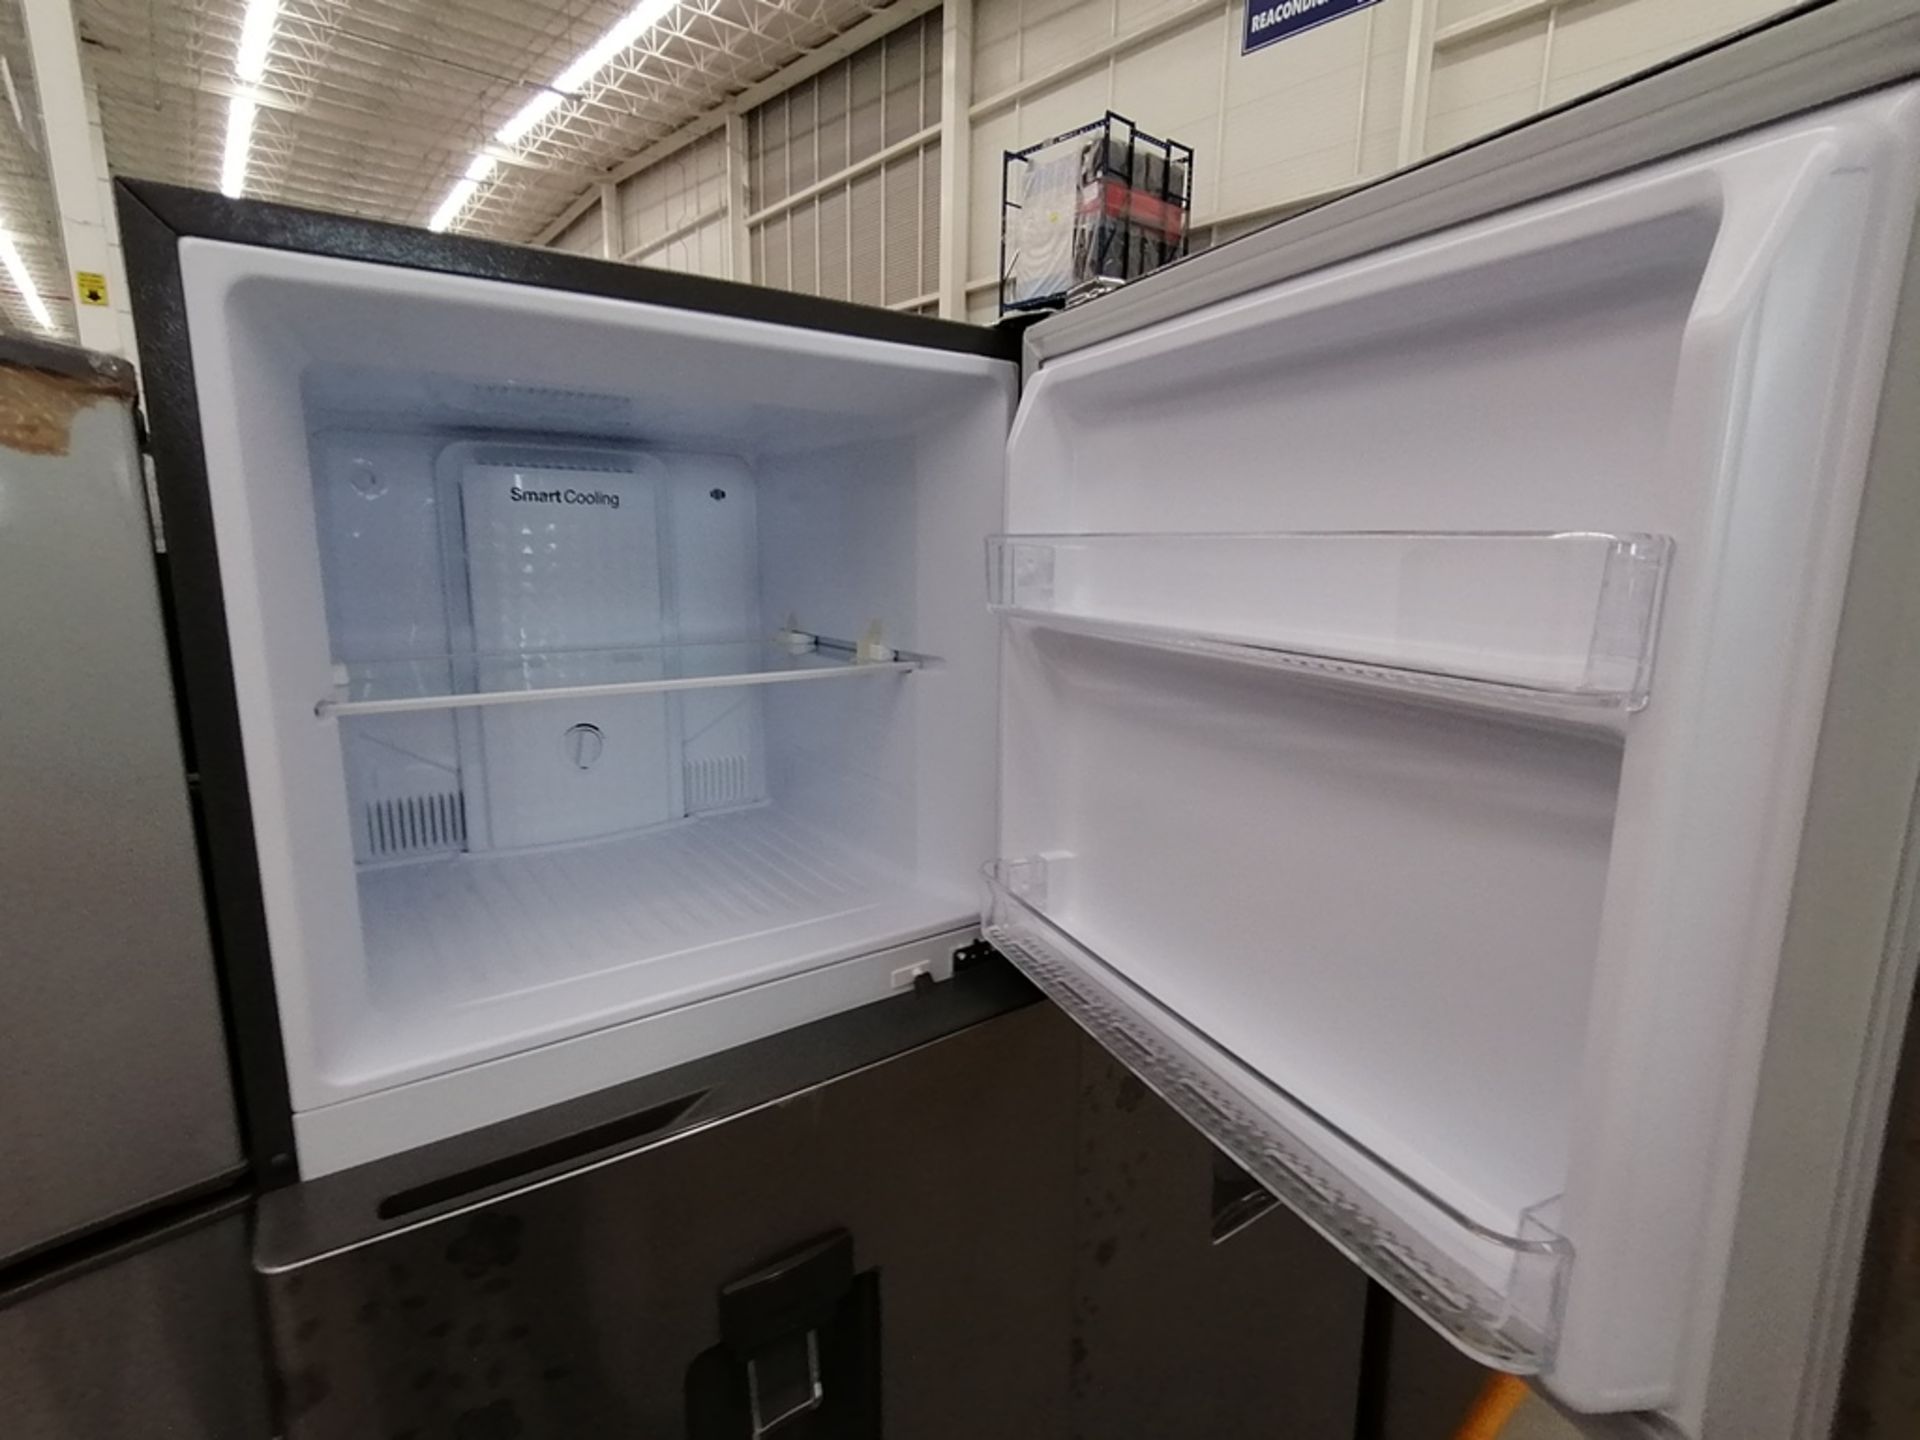 Lote de 2 Refrigeradores, Incluye: 1 Refrigerador con dispensador de agua, Marca Winia, Modelo DFR4 - Image 6 of 16